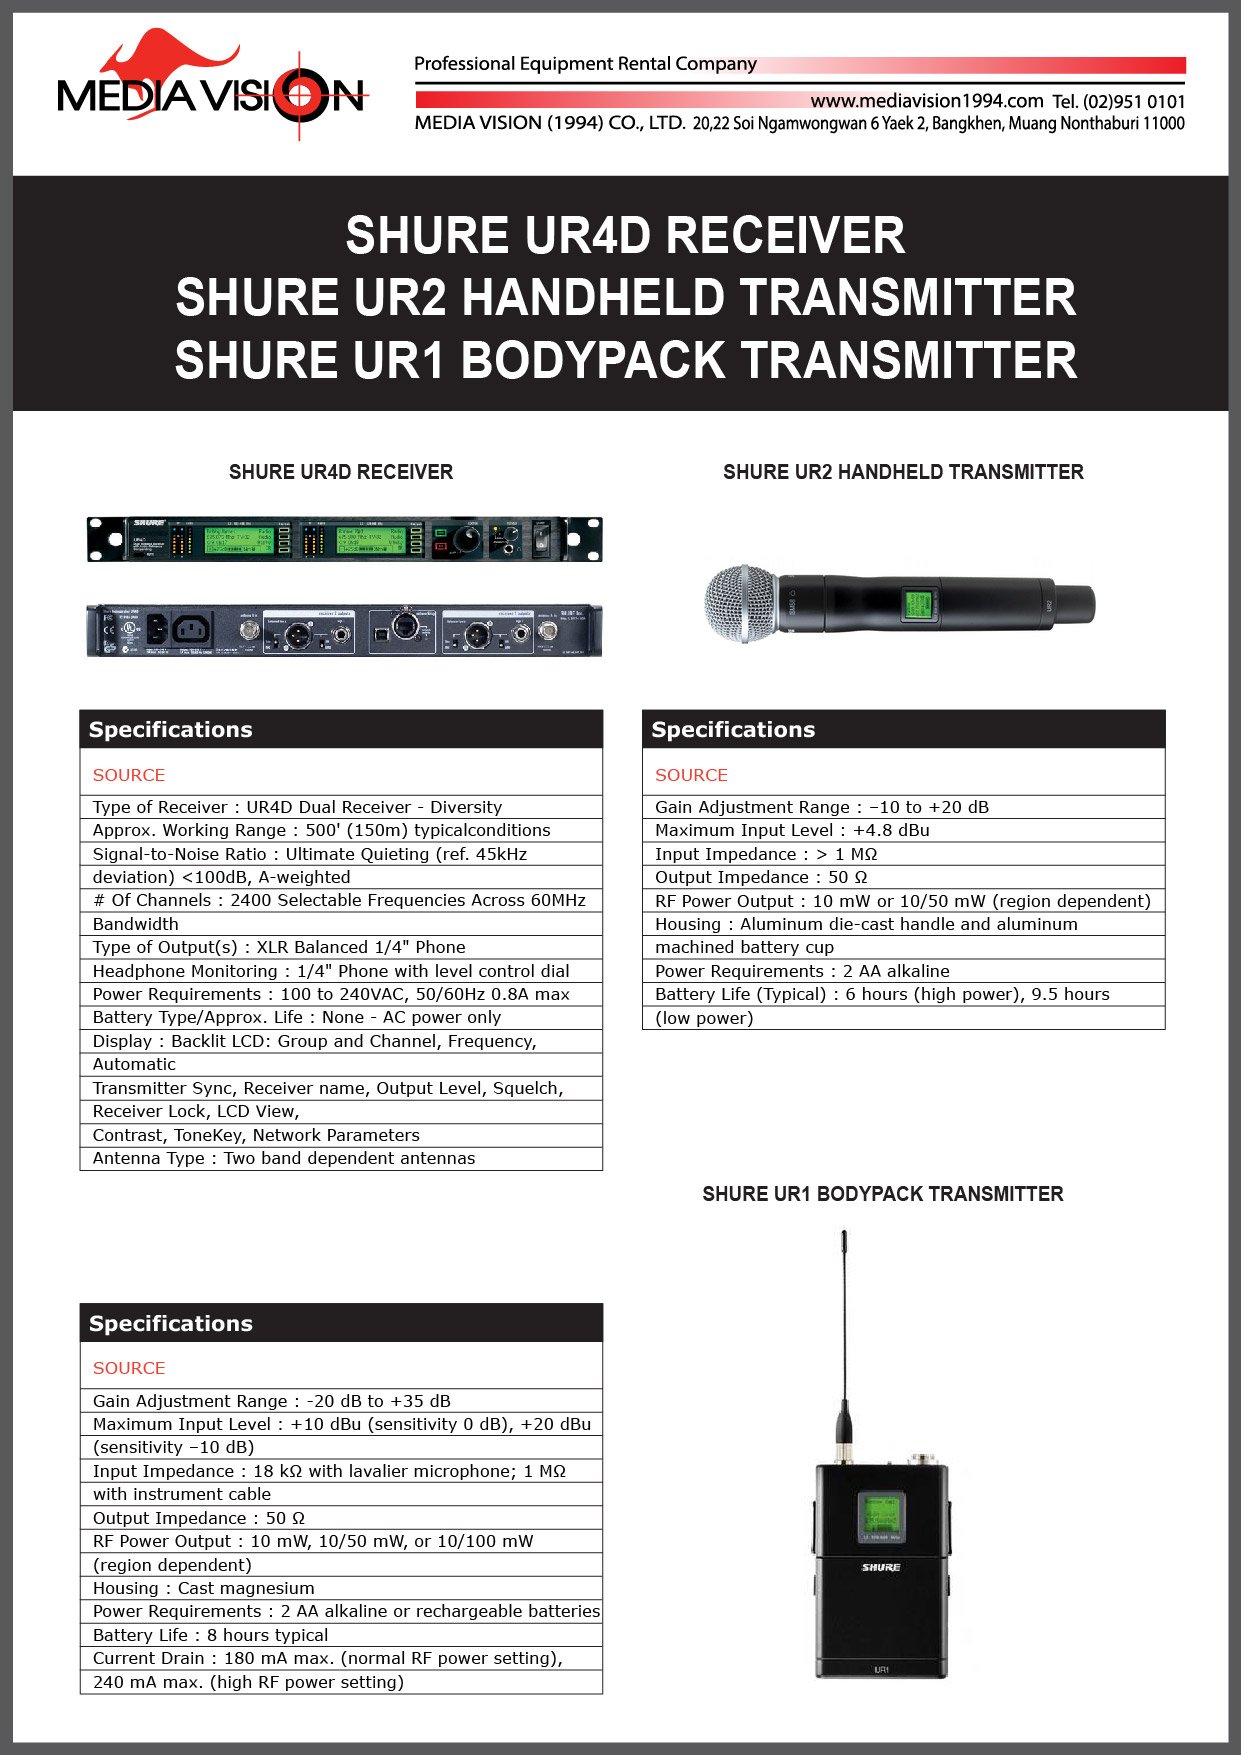 SHURE UR4D RECEIVER, SHURE UR2 HANDHELD TRANSMITTER, SHURE UR1 BODYPACK TRANSMITTER